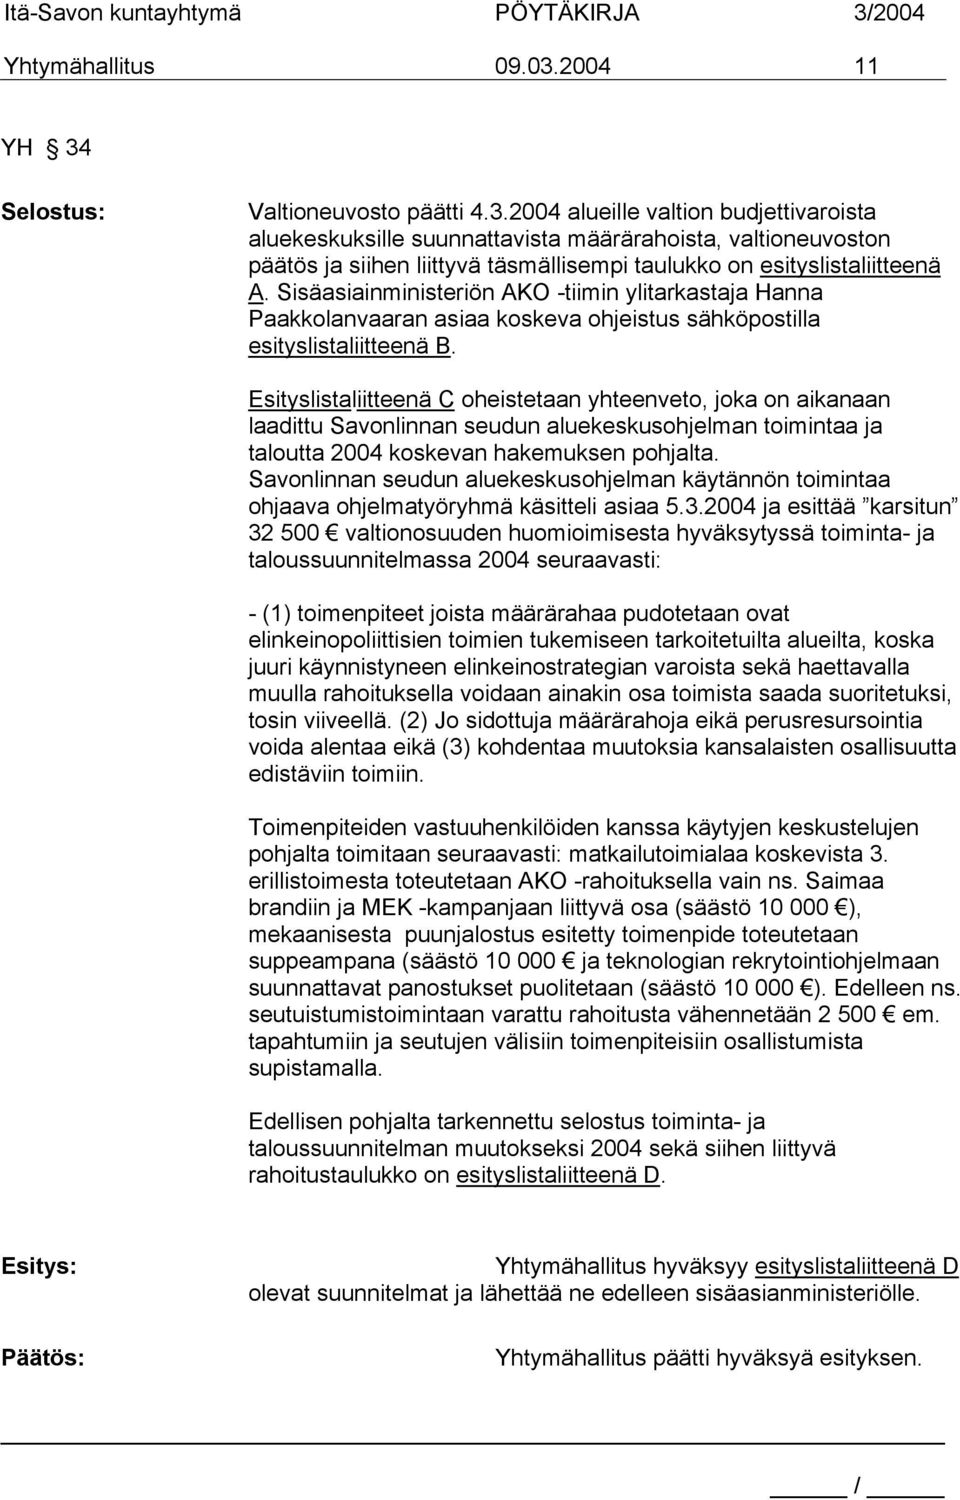 Esityslistaliitteenä C oheistetaan yhteenveto, joka on aikanaan laadittu Savonlinnan seudun aluekeskusohjelman toimintaa ja taloutta 2004 koskevan hakemuksen pohjalta.